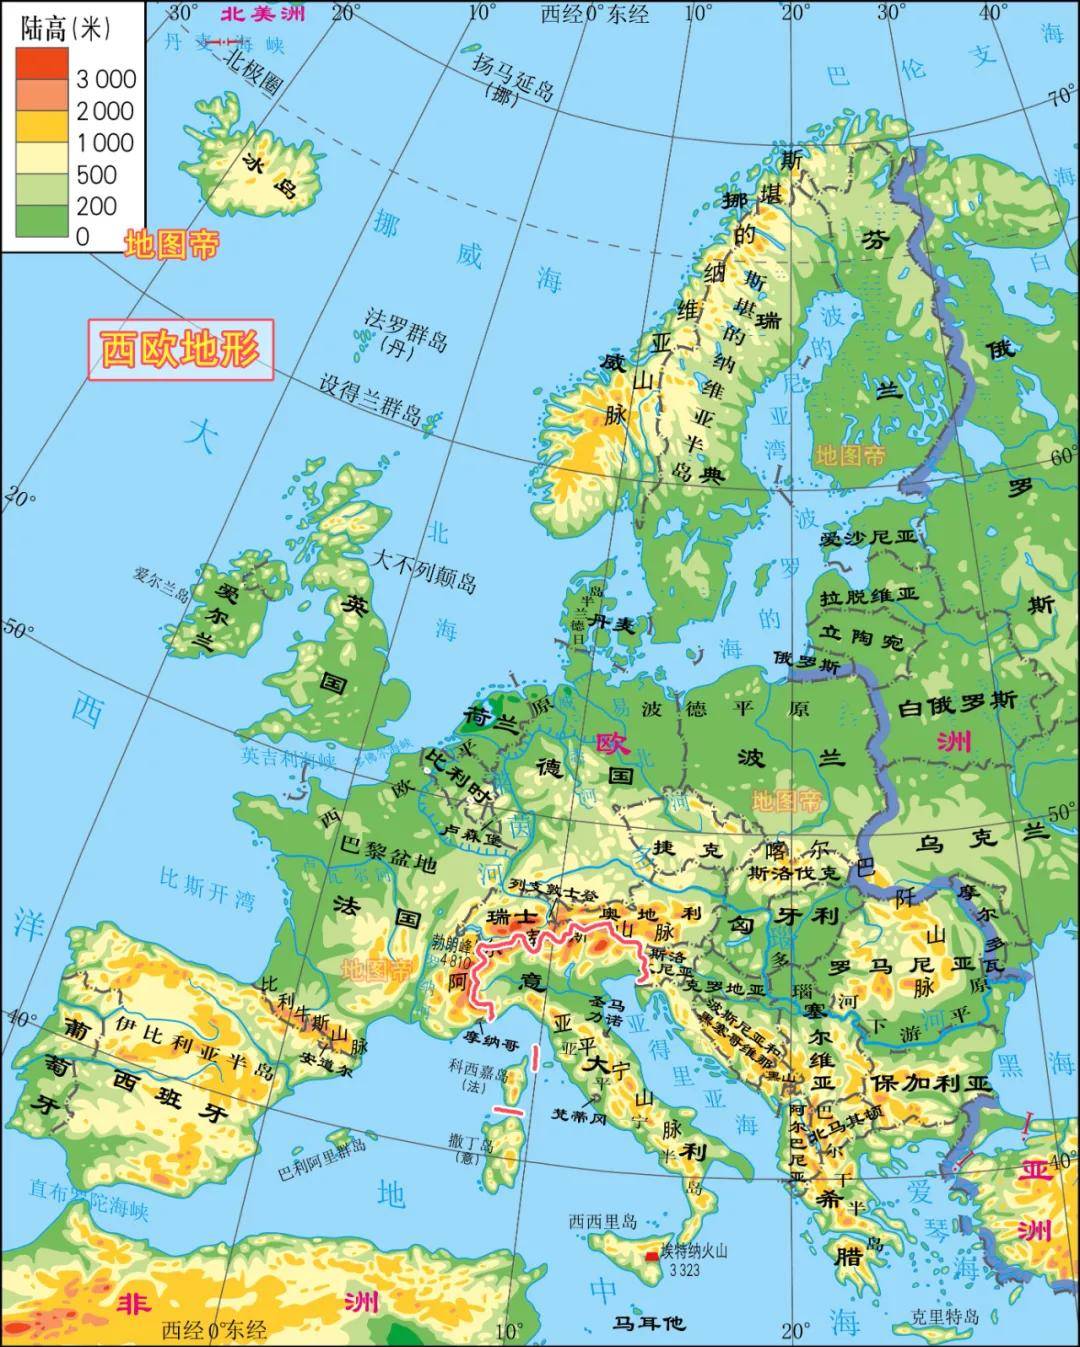 欧洲面积和中国差不多,为何不能统一?